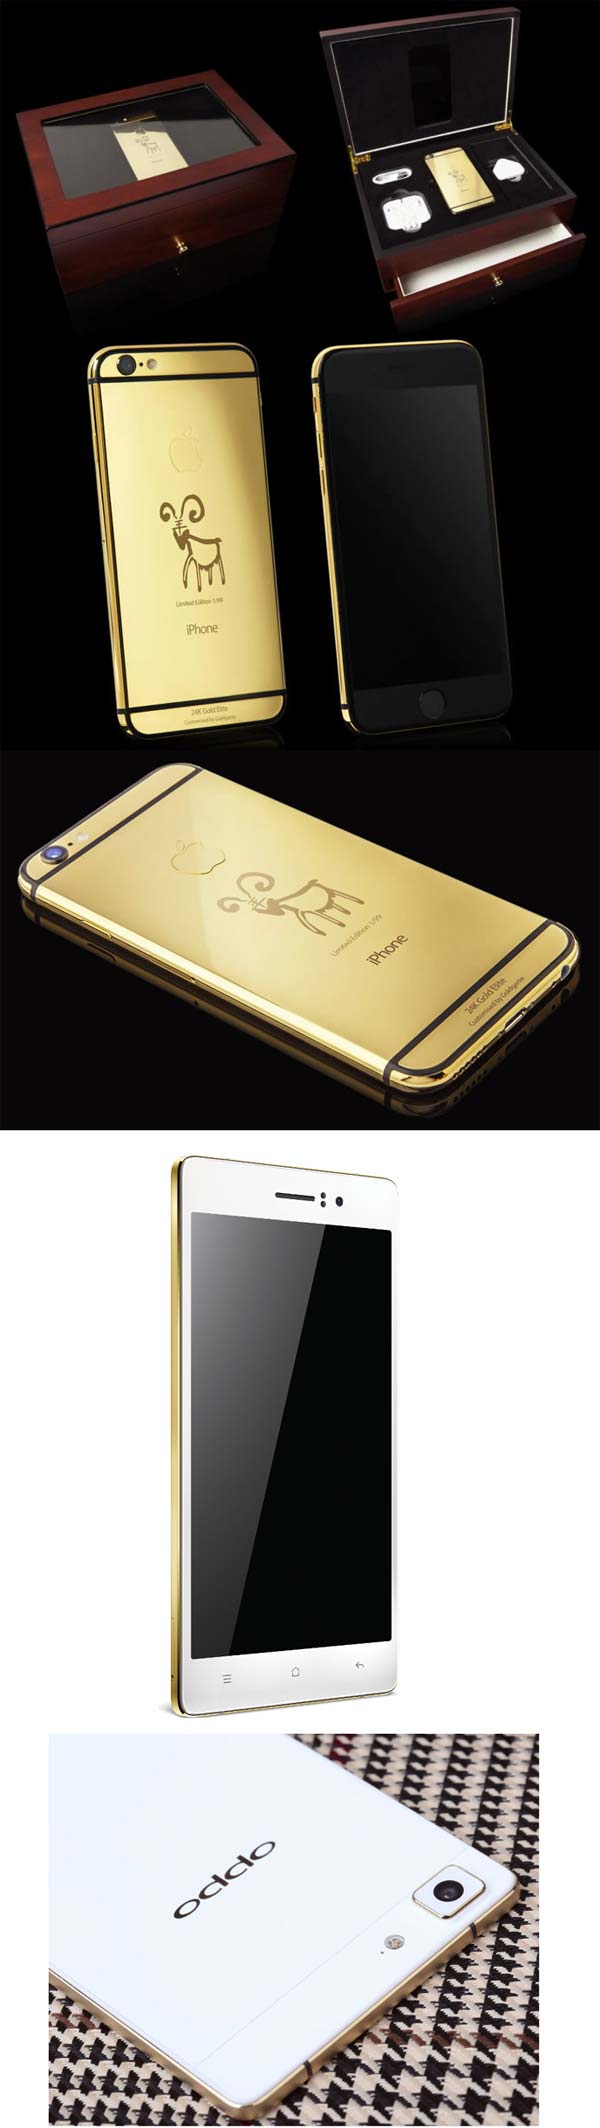 Золотой iPhone и позолоченный Oppo R5